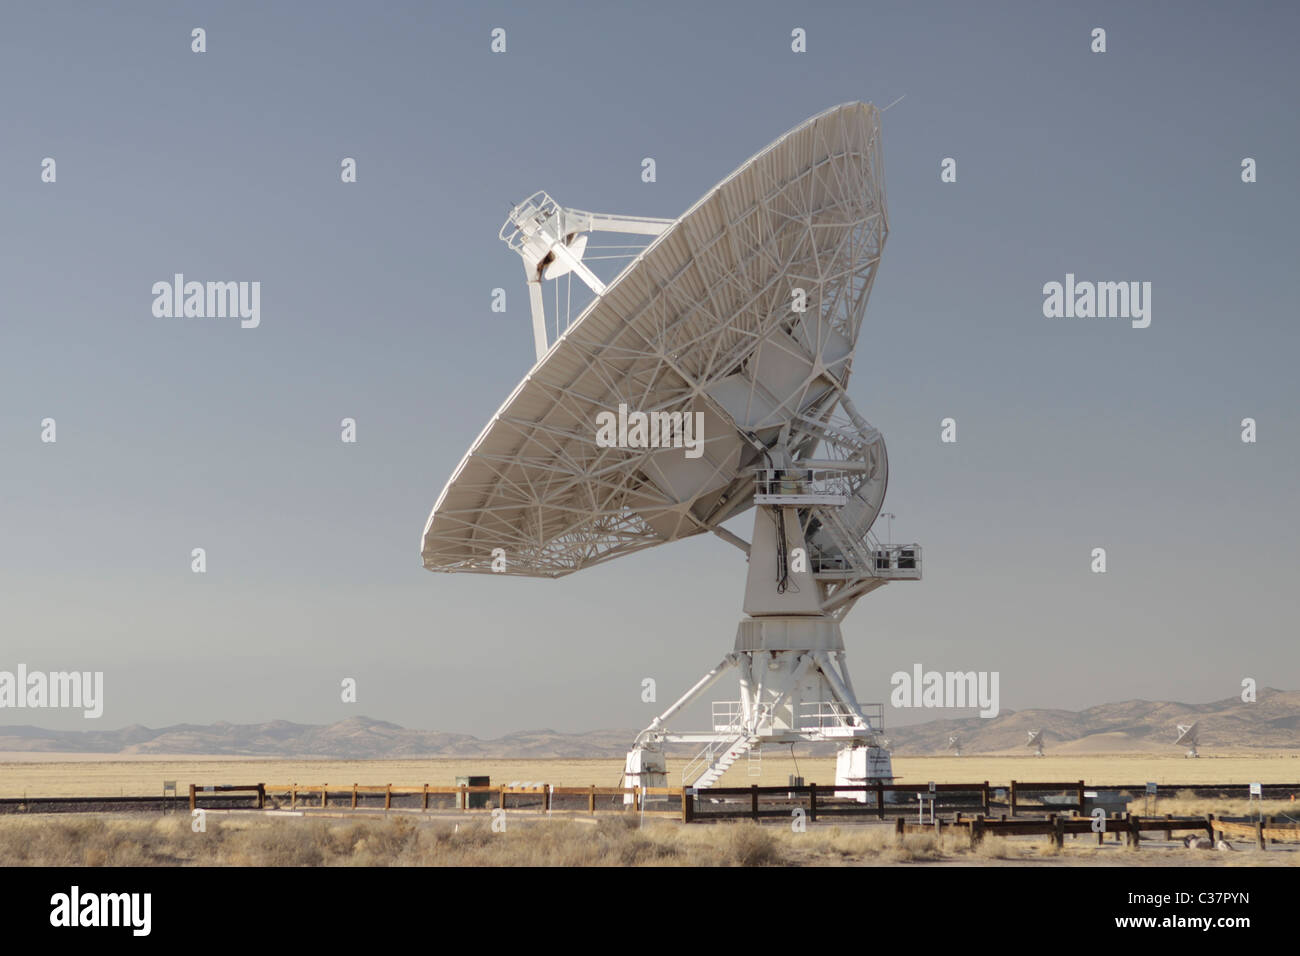 Molto grande schiera (VLA) radio astronomia osservatorio situato nei pressi di Socorro, Nuovo Messico, Stati Uniti d'America. Foto Stock